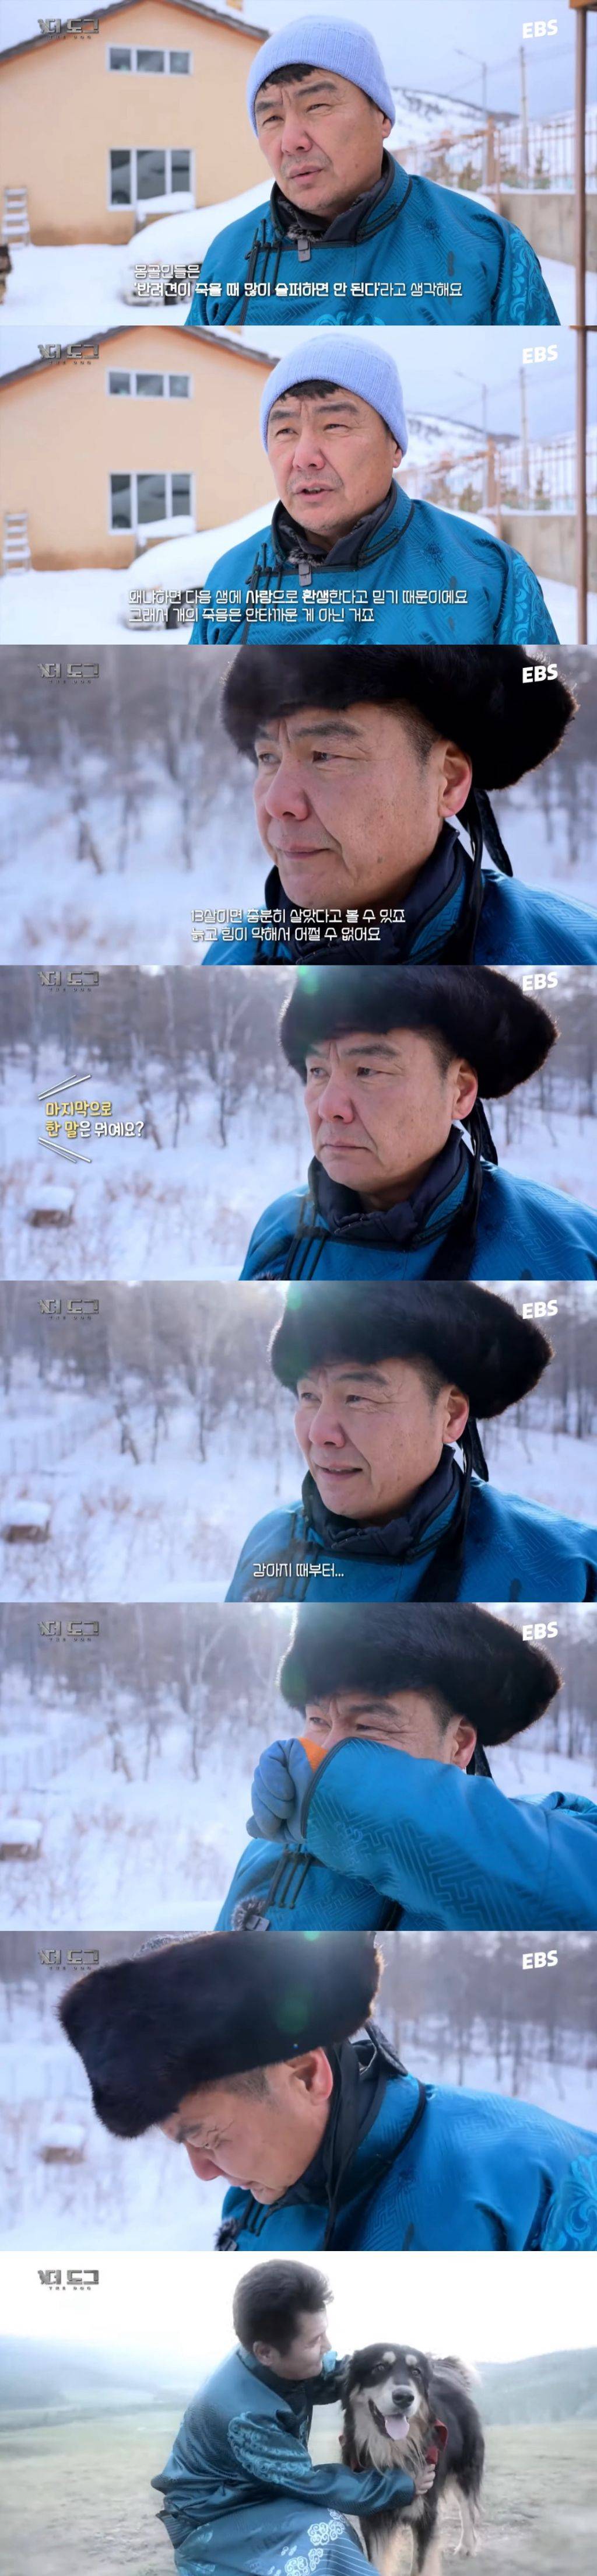 개의 환생을 믿는 몽골인이 반려견을 보내는 방법...jpg | 인스티즈